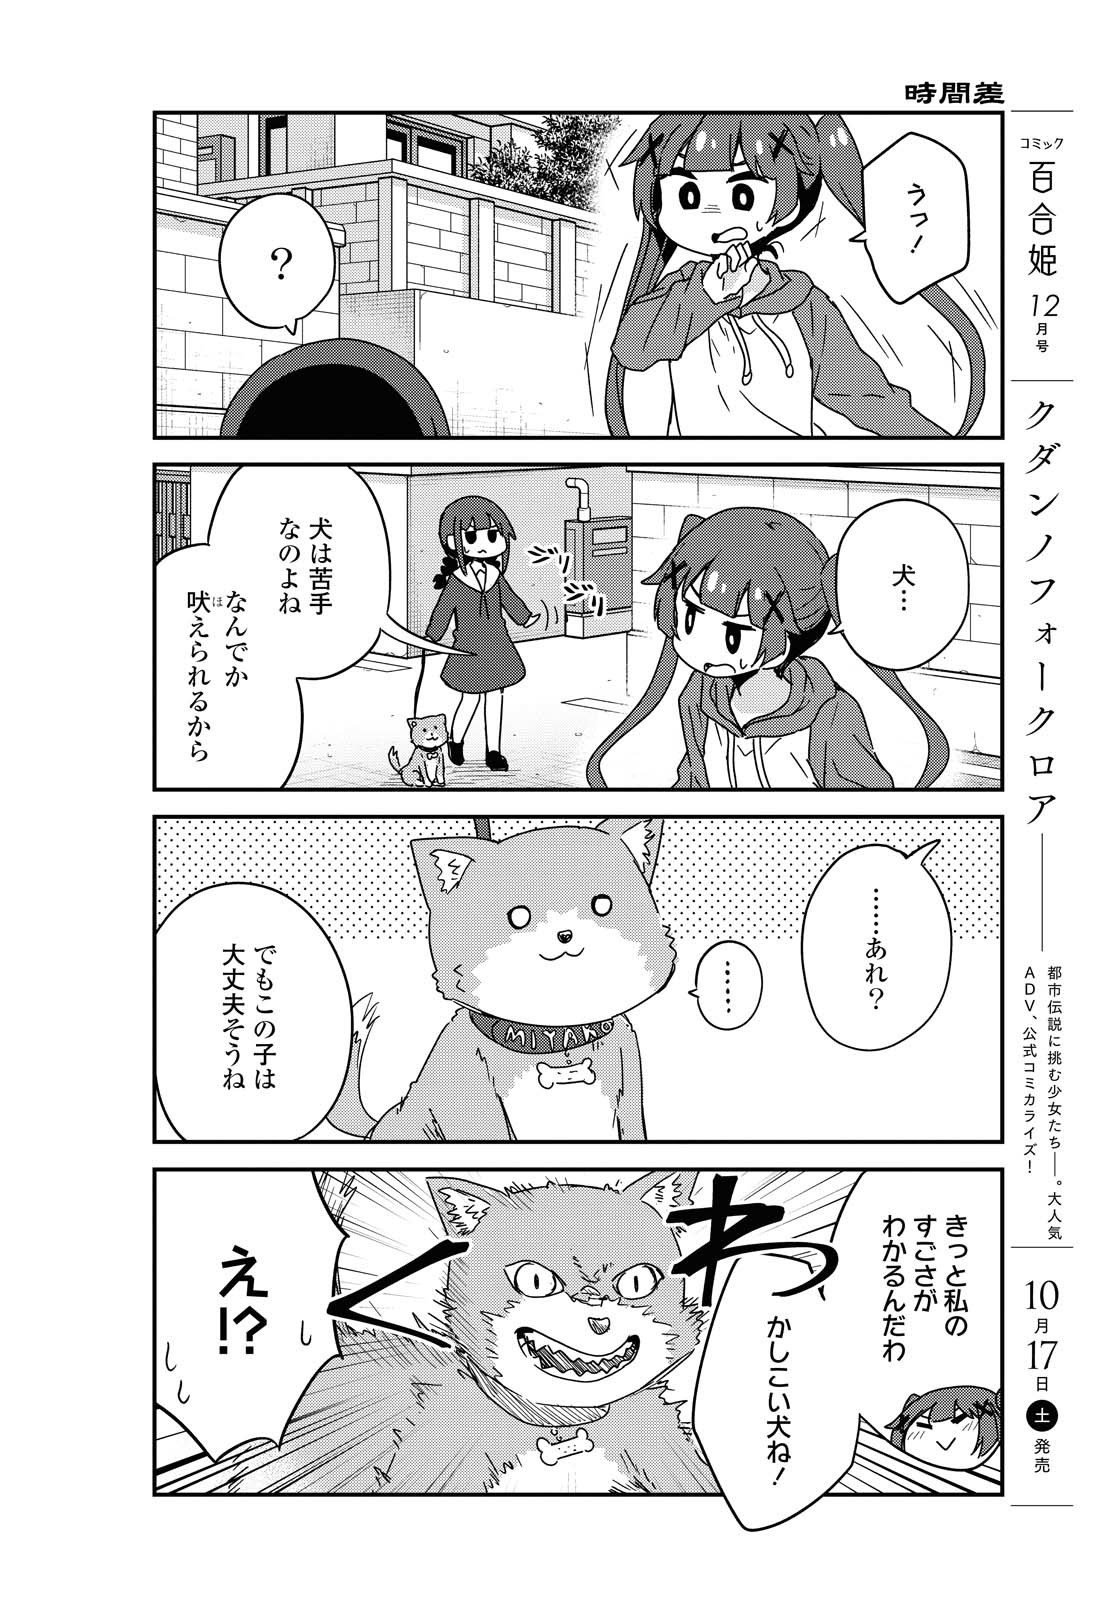 Watashi ni Tenshi ga Maiorita! - Chapter 71 - Page 14